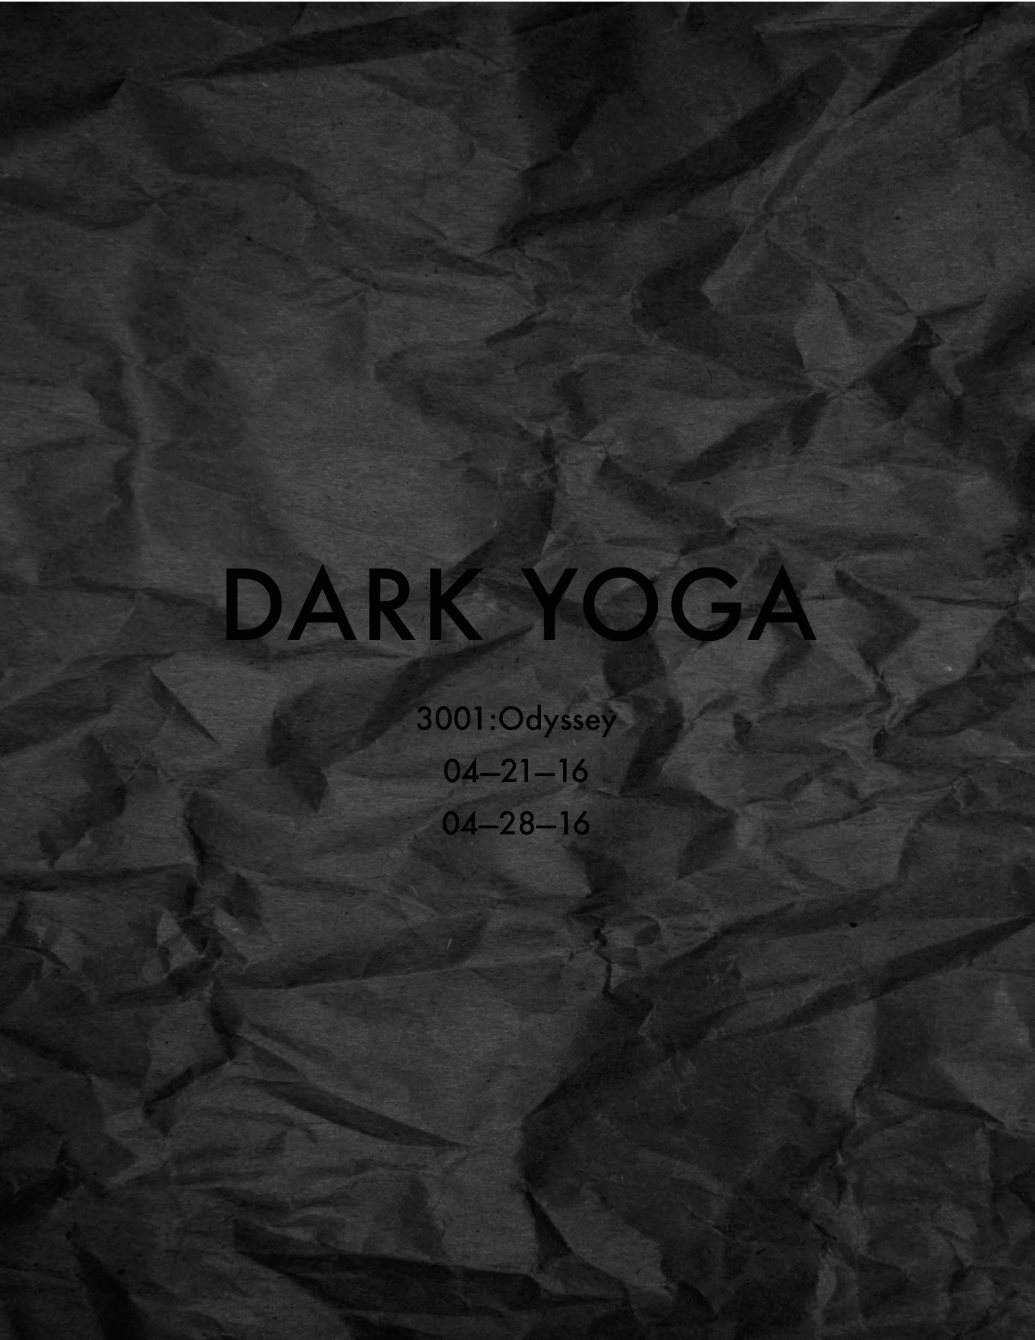 Dark Yoga - フライヤー表